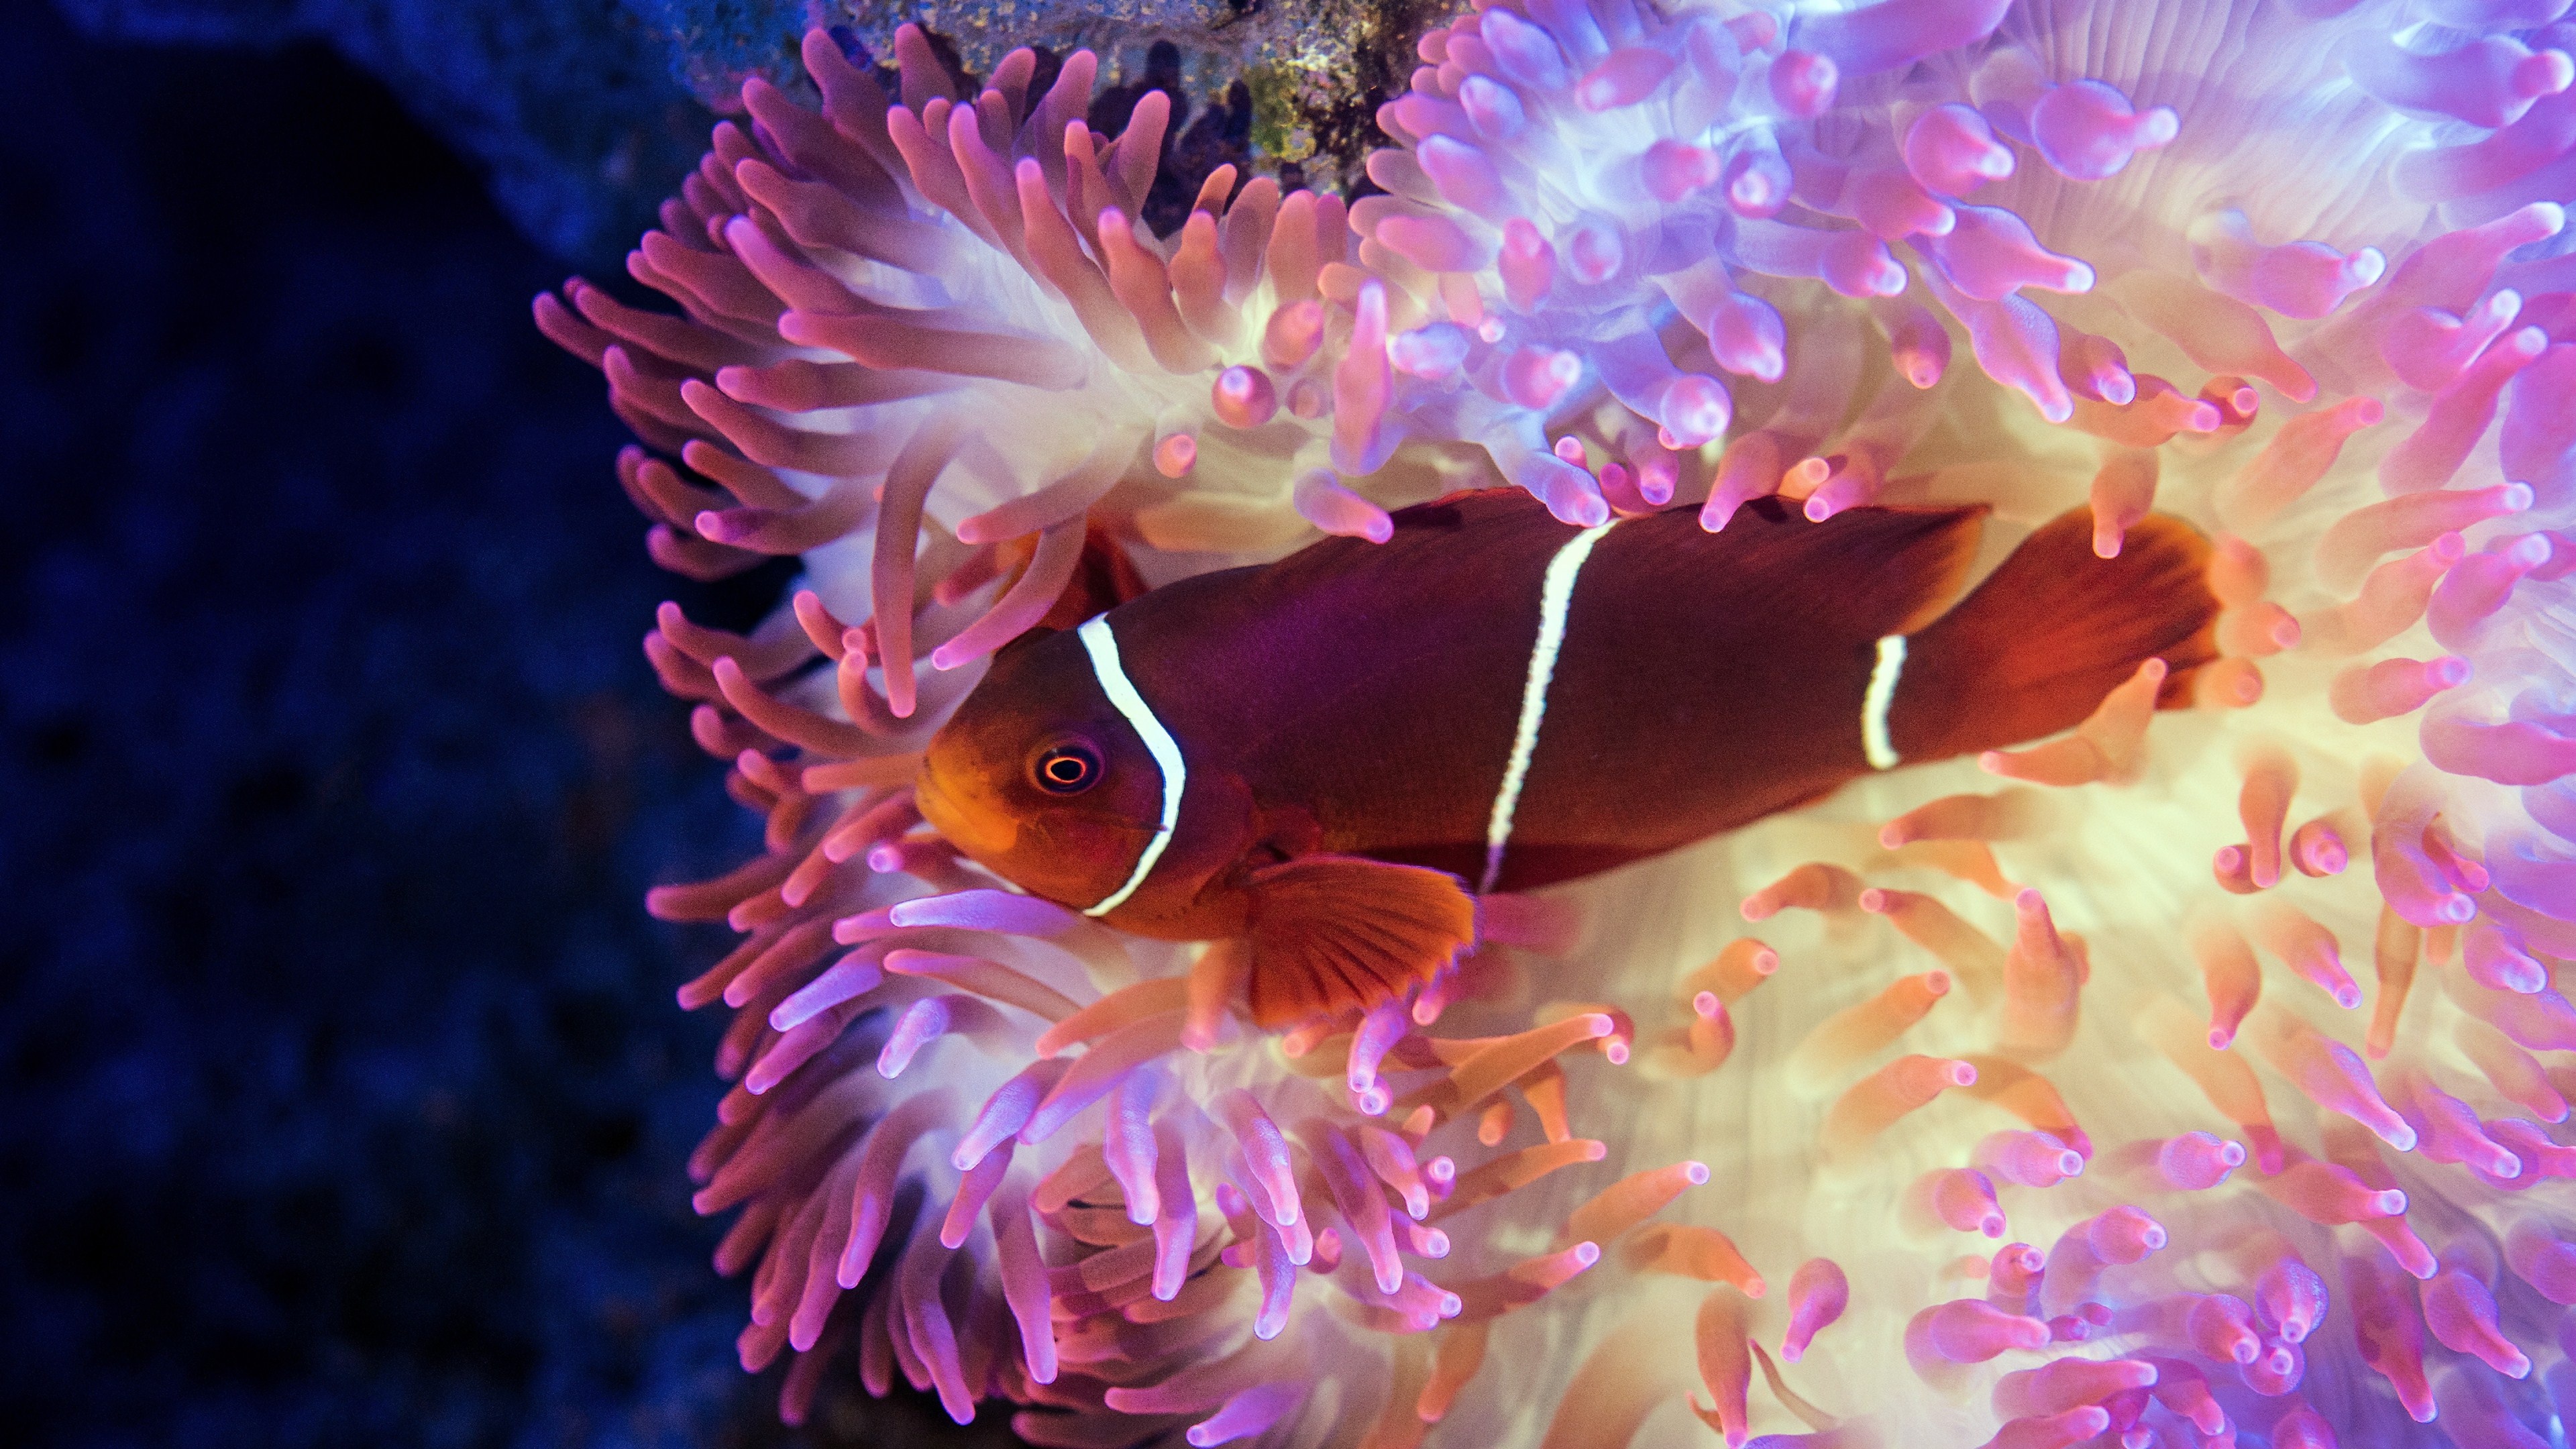 Sea anemone delight, Stunning 4K wallpapers, Underwater elegance, Desktop beauty, 3840x2160 4K Desktop